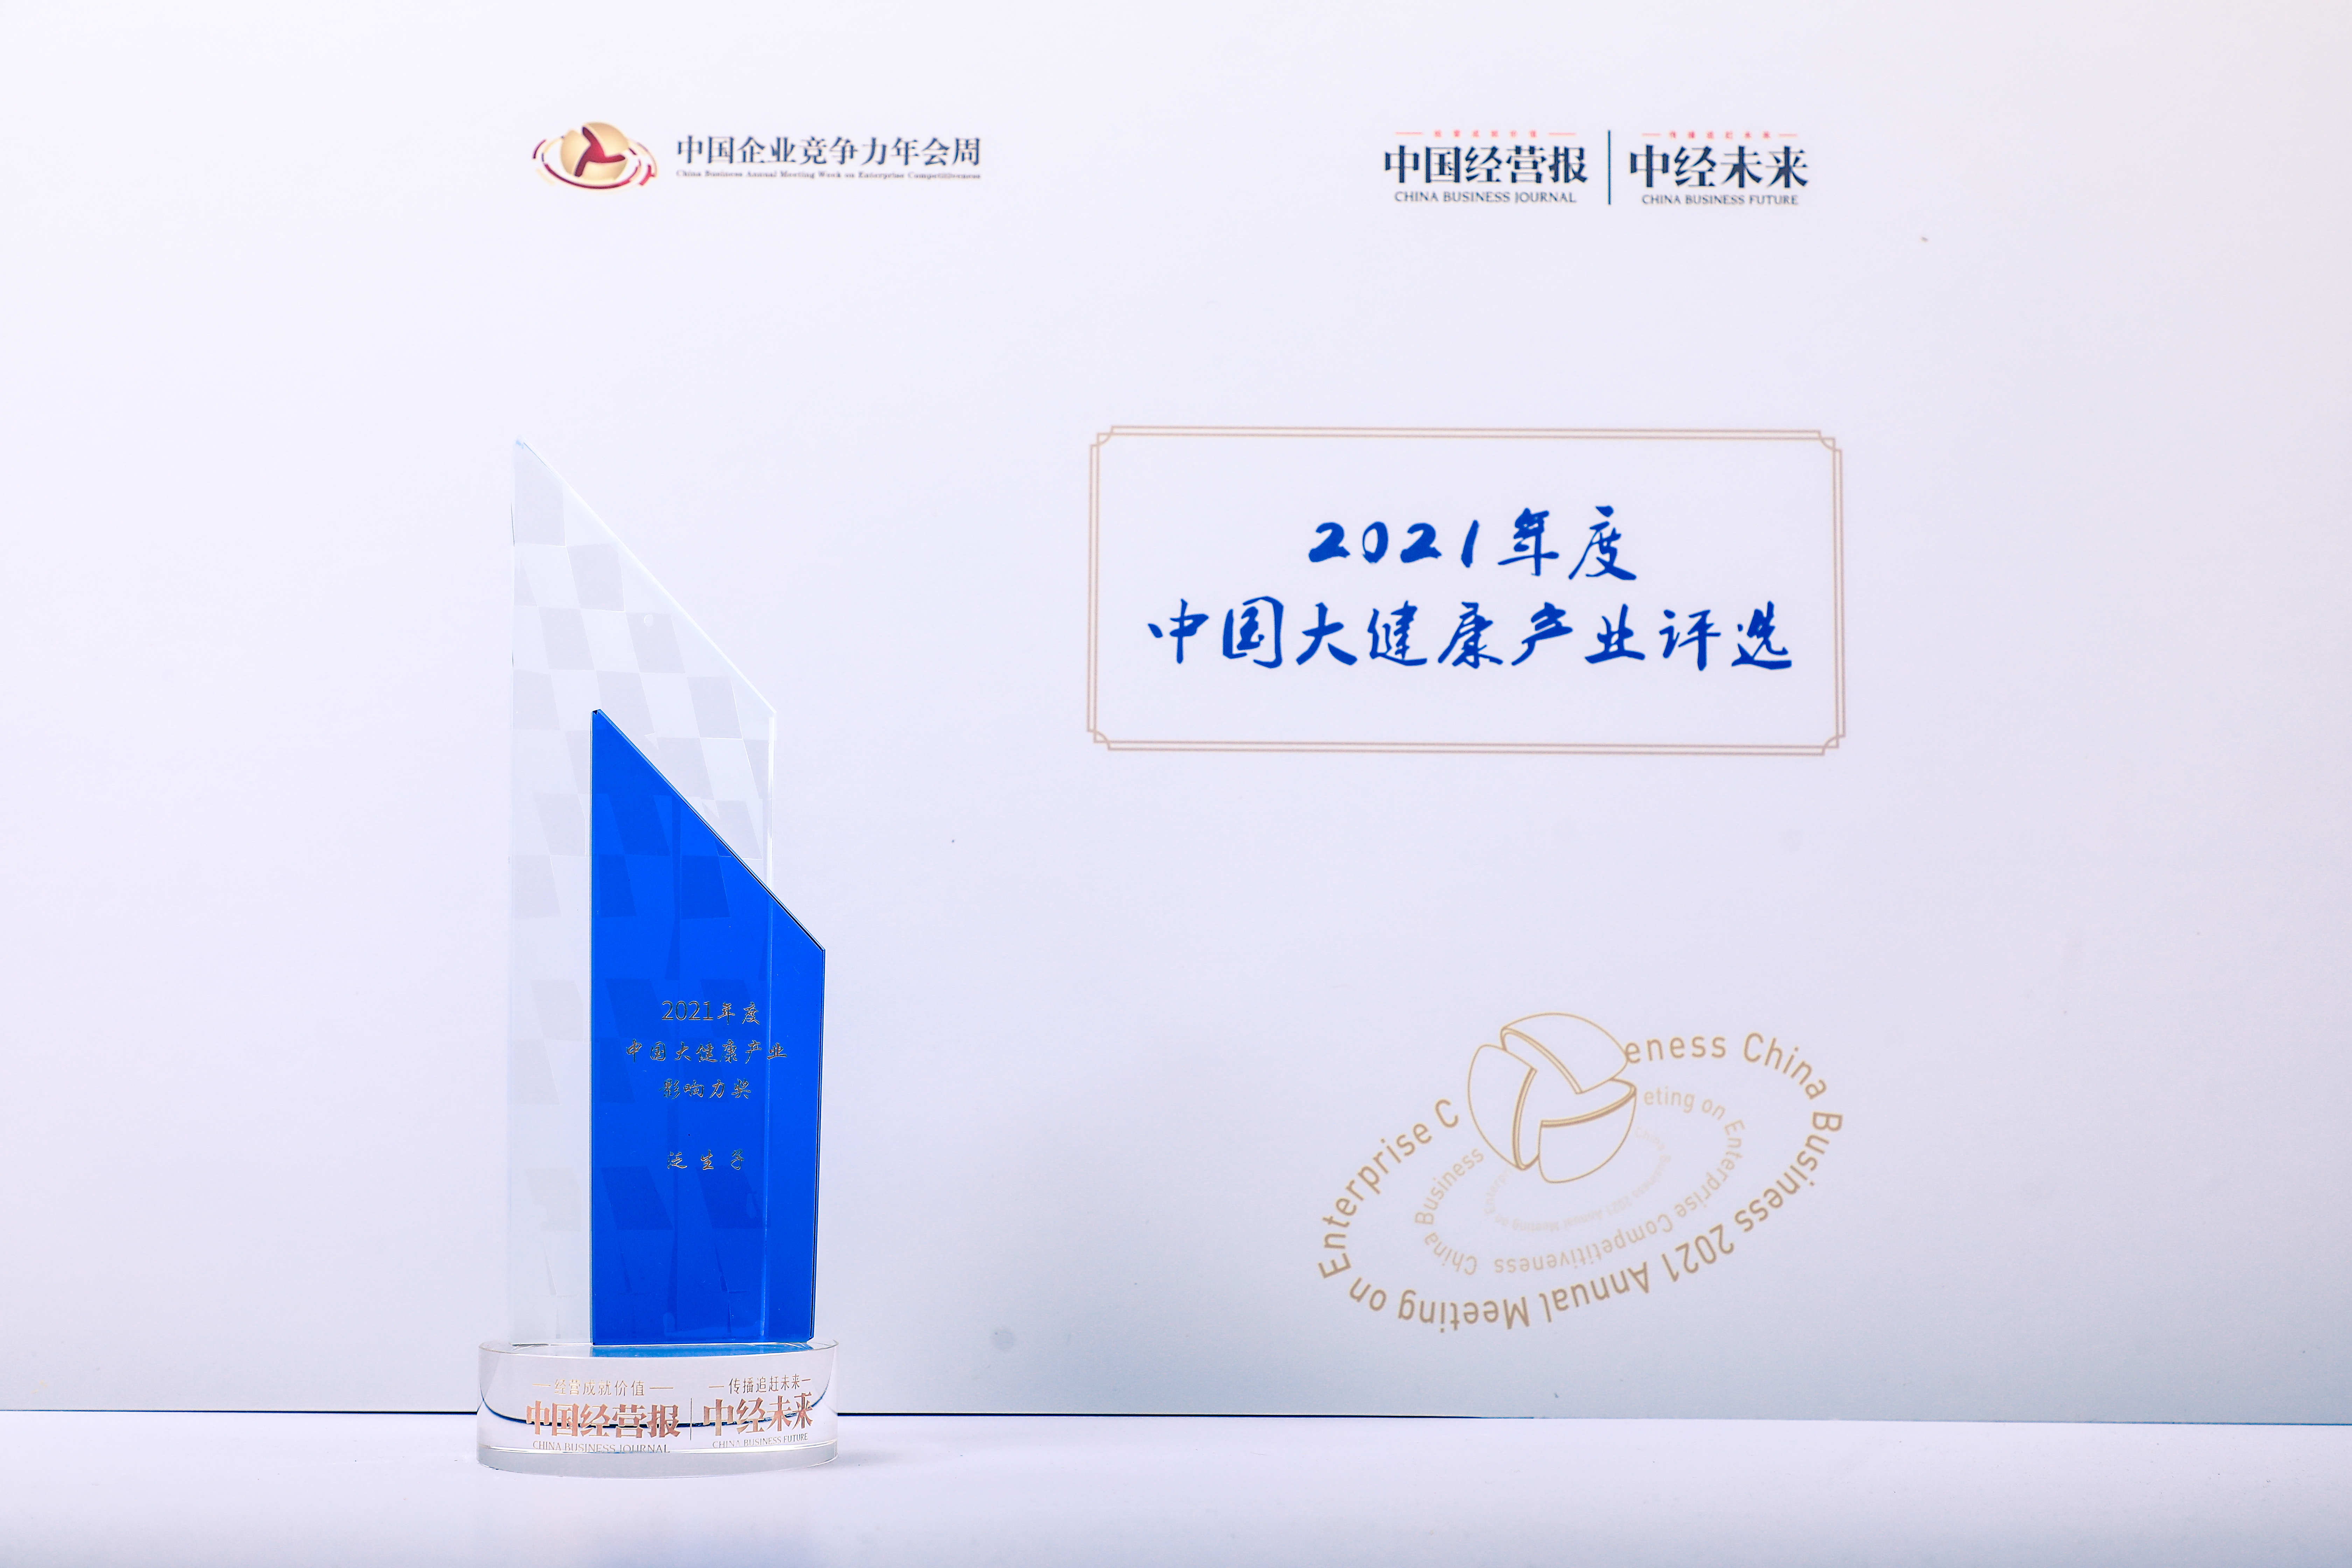 泛生子荣获“2021年度大健康产业影响力奖”